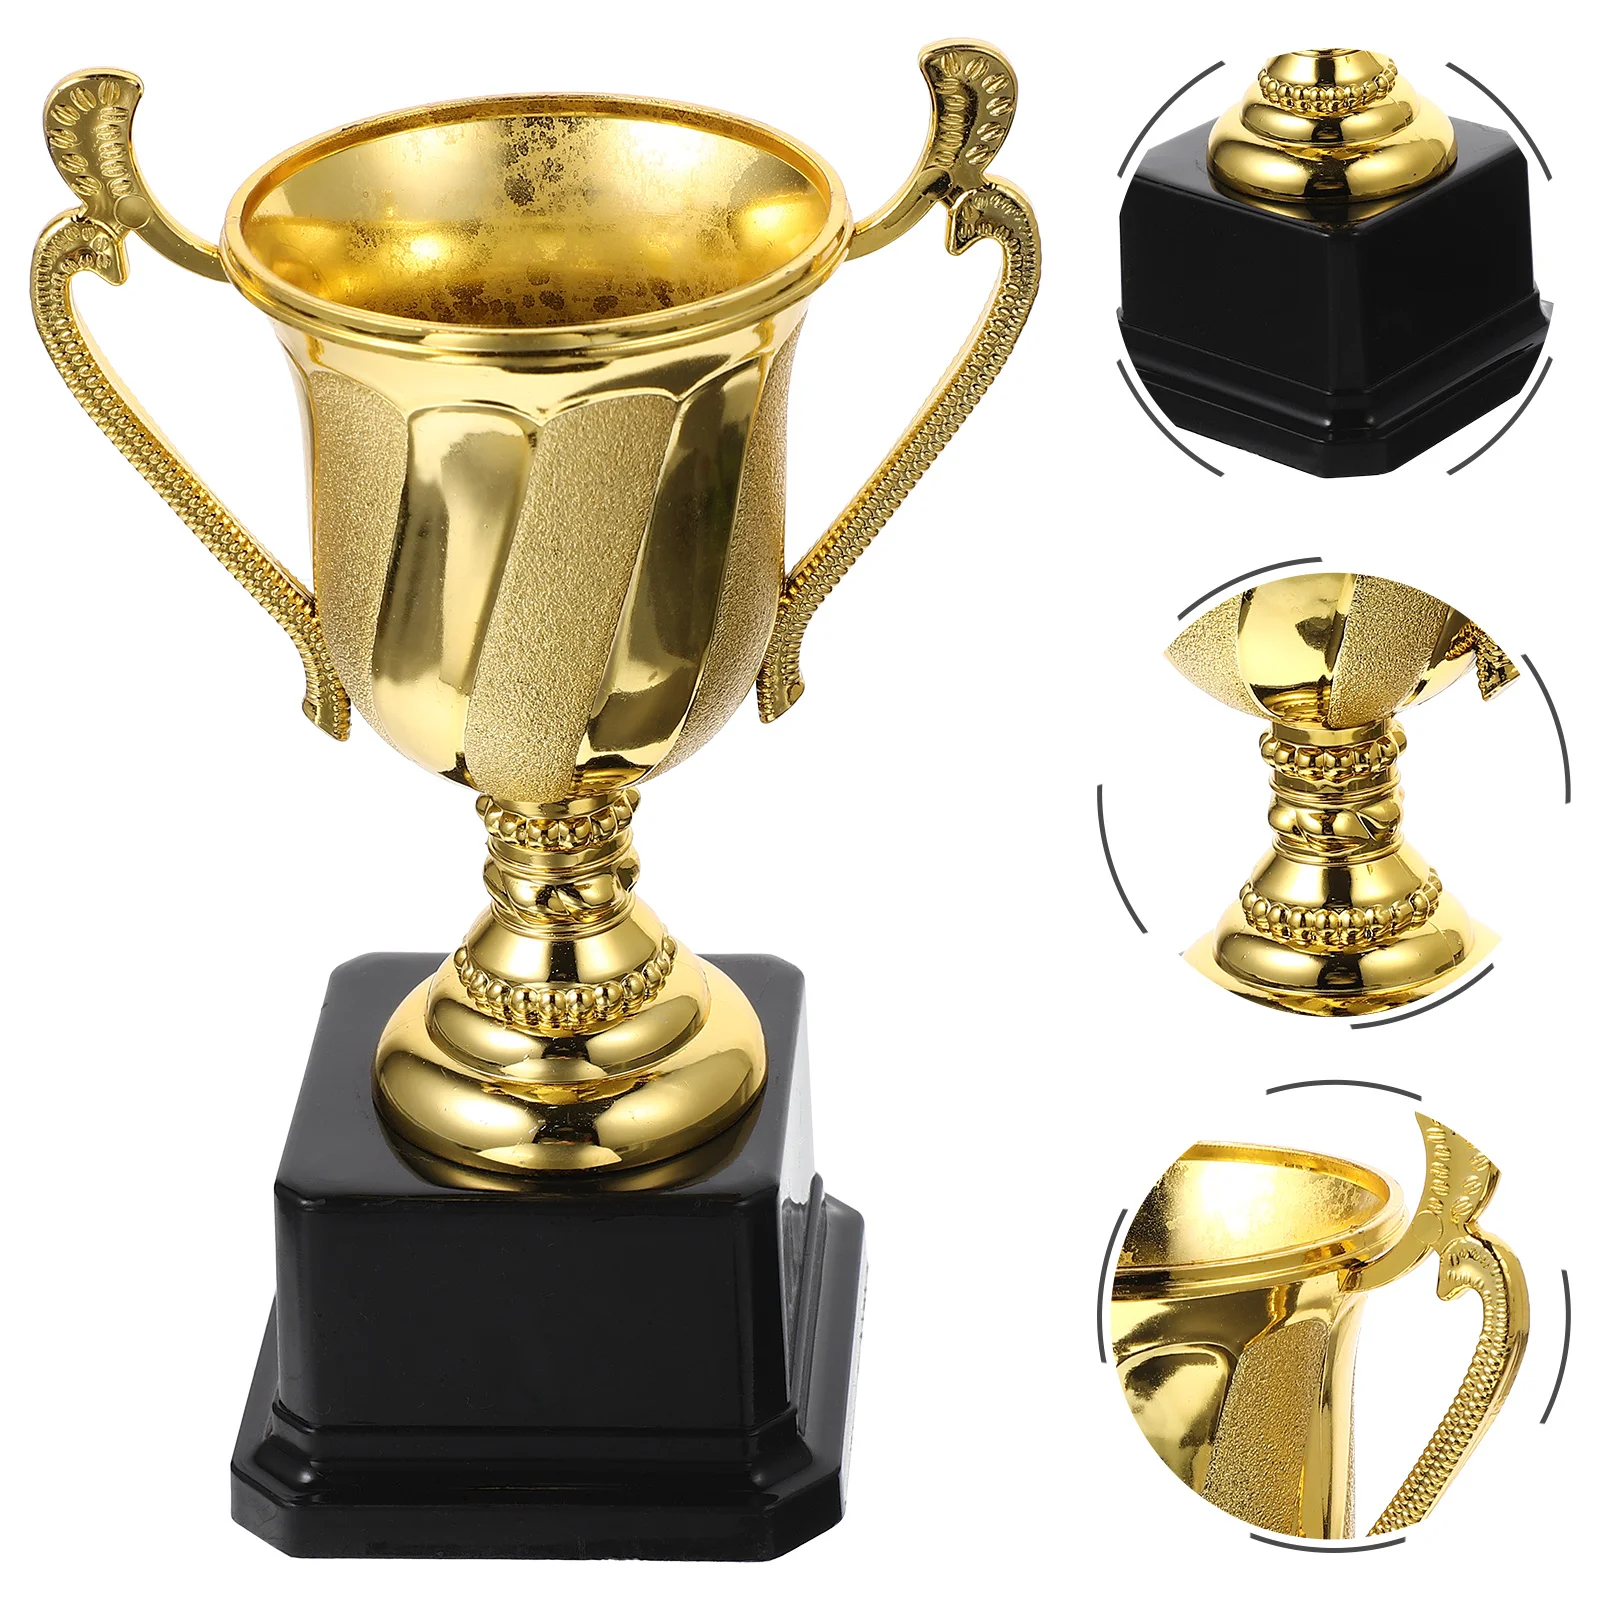 Award Trophy Cup School Soccer Trophy For Kids Small Trophy Grammy Award Trophy Trophy For Kids for Children Award Prize